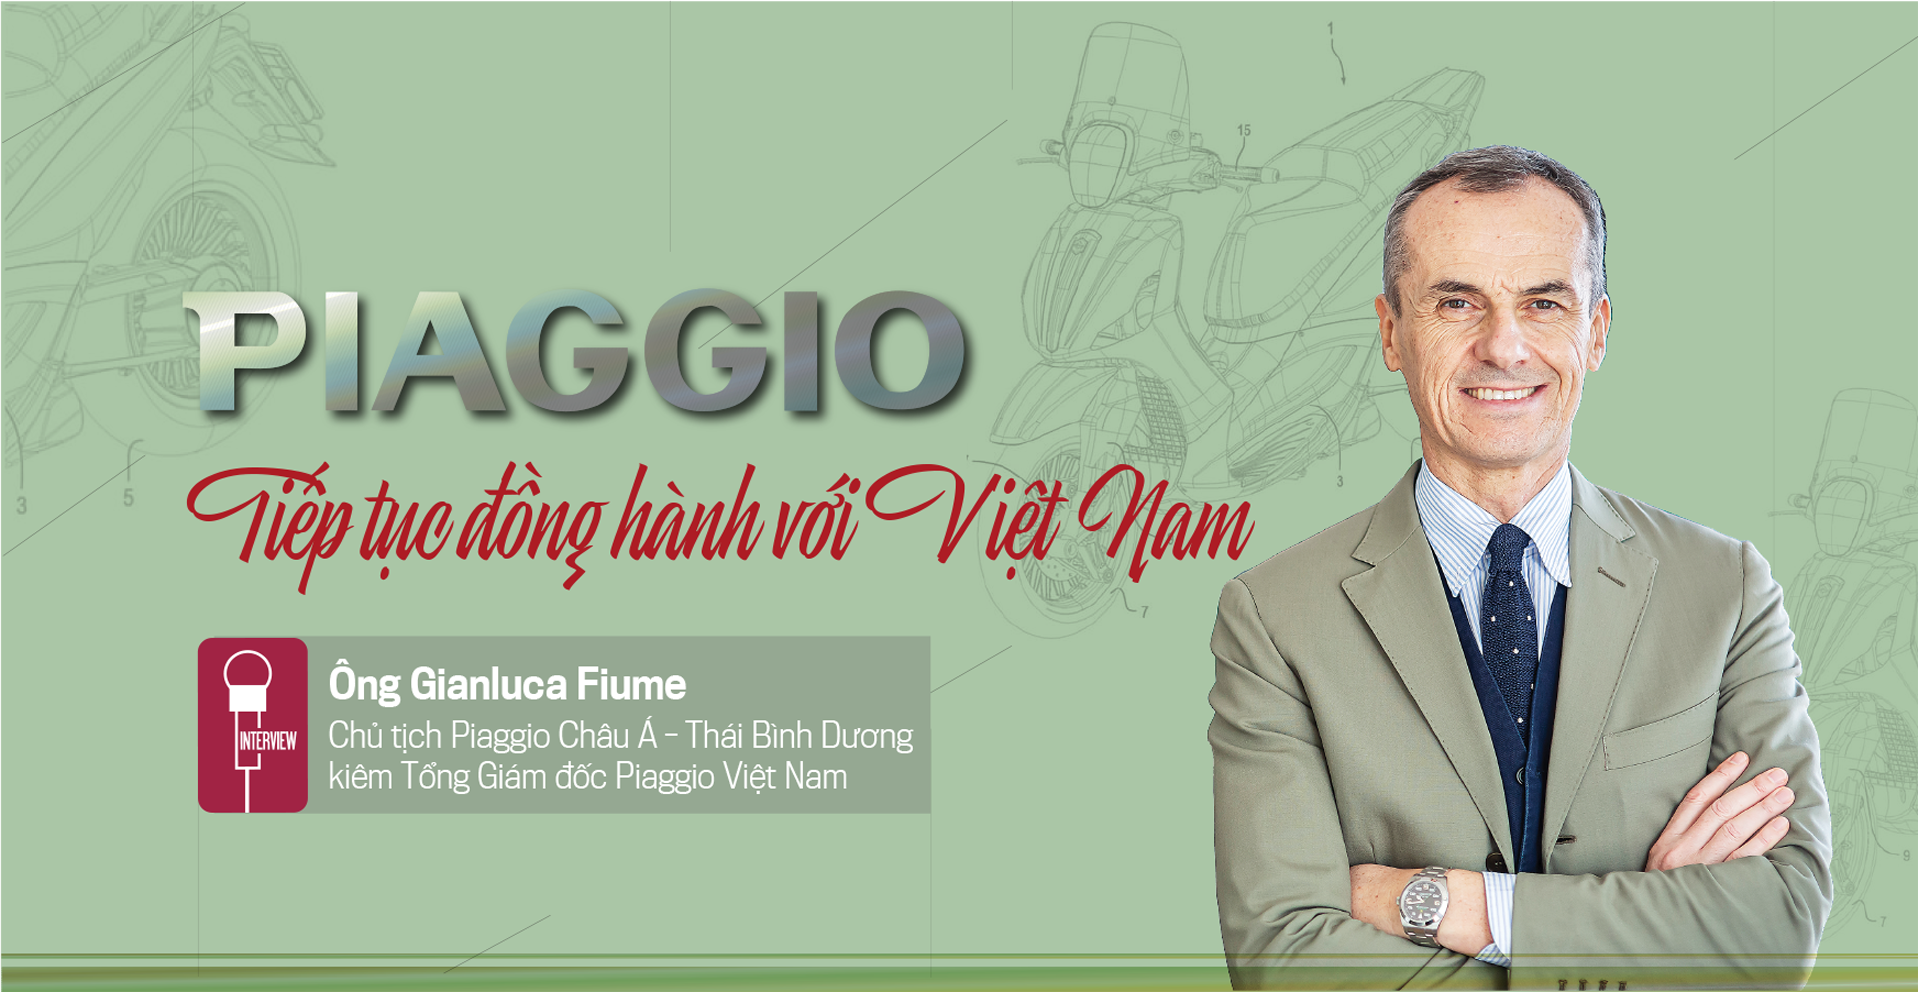 Piaggio tiếp tục đồng hành với Việt Nam  - Ảnh 1